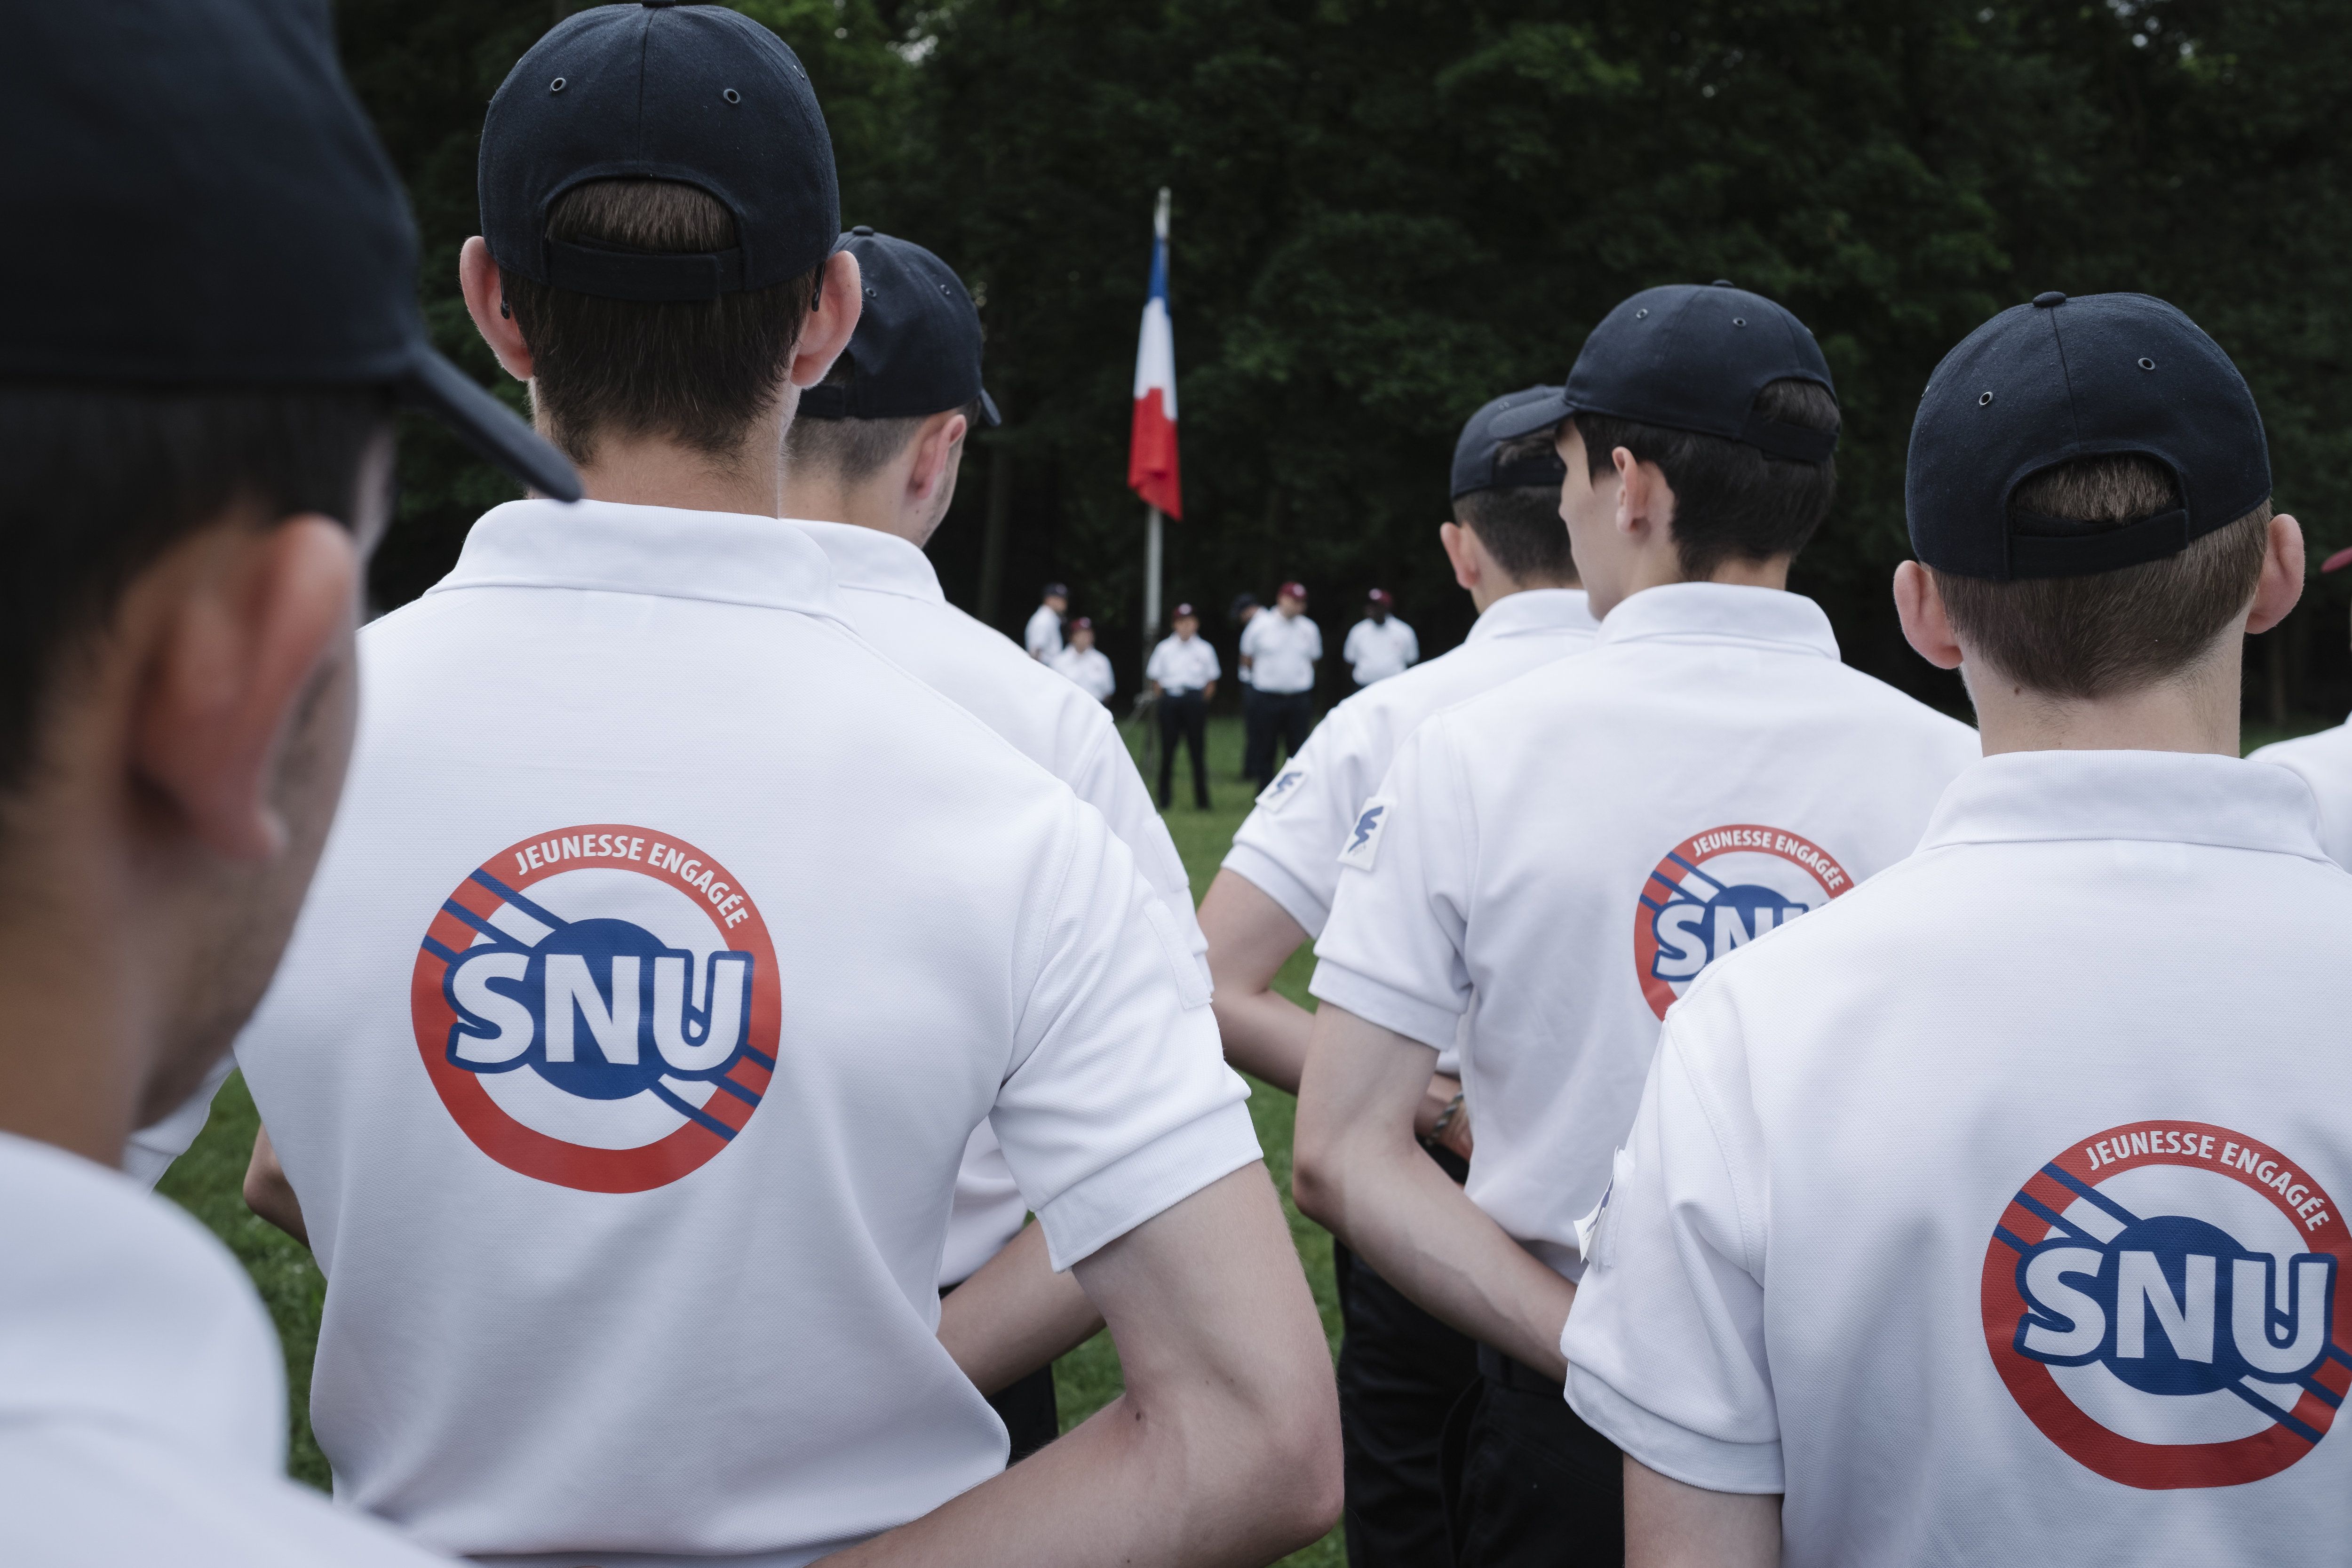 Le SNU est destiné aux élèves de seconde, uniquement pour des volontaires, mais à quoi sert-il ?. (Illustration) LP/Arnaud Dumontier